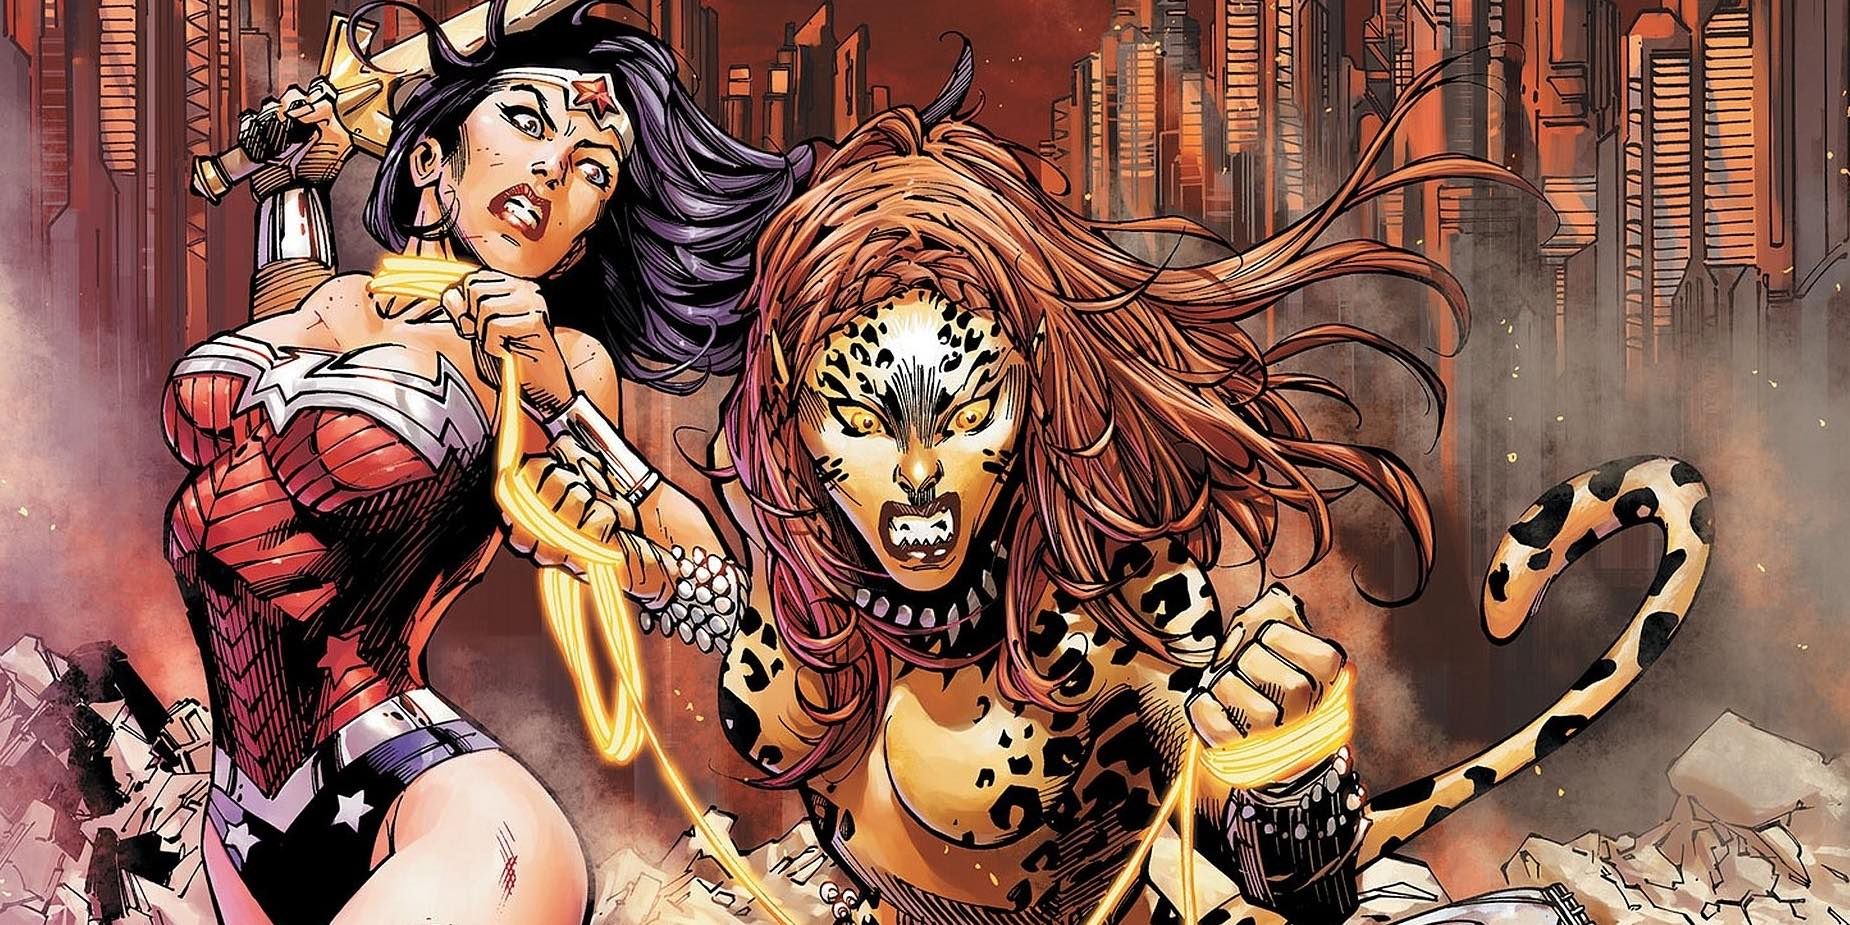 Wonder Woman battles Cheetah in DC Comics